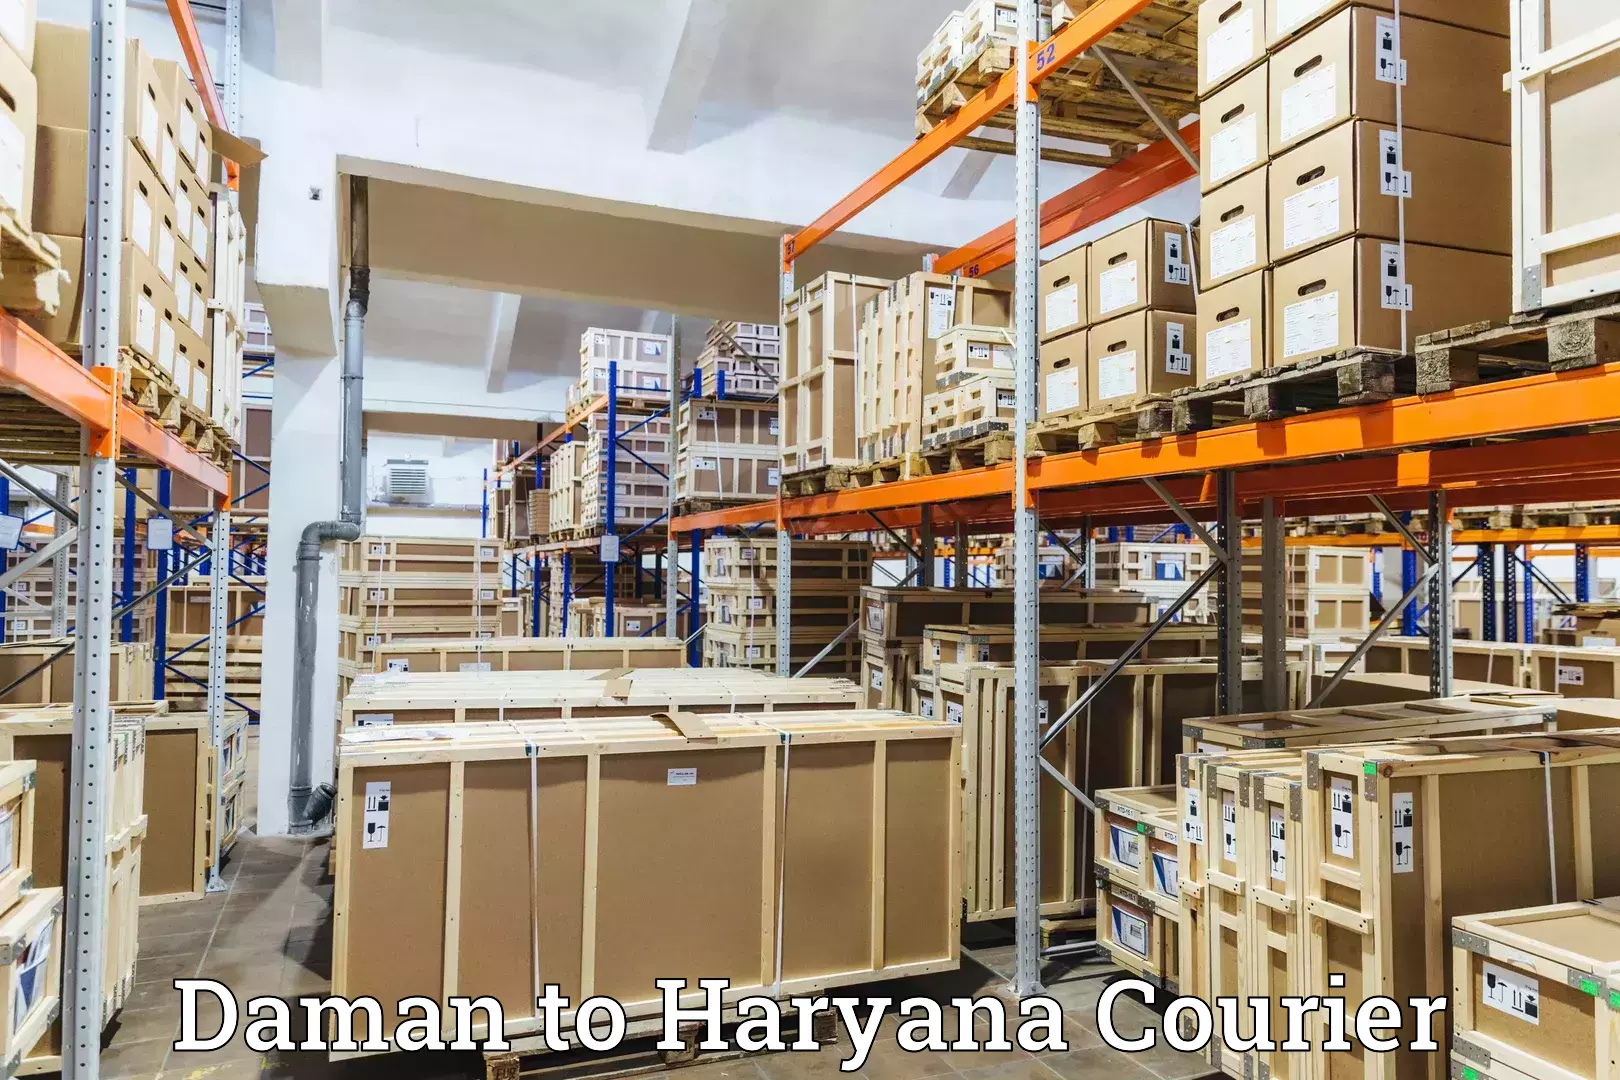 Express logistics providers Daman to Chaudhary Charan Singh Haryana Agricultural University Hisar